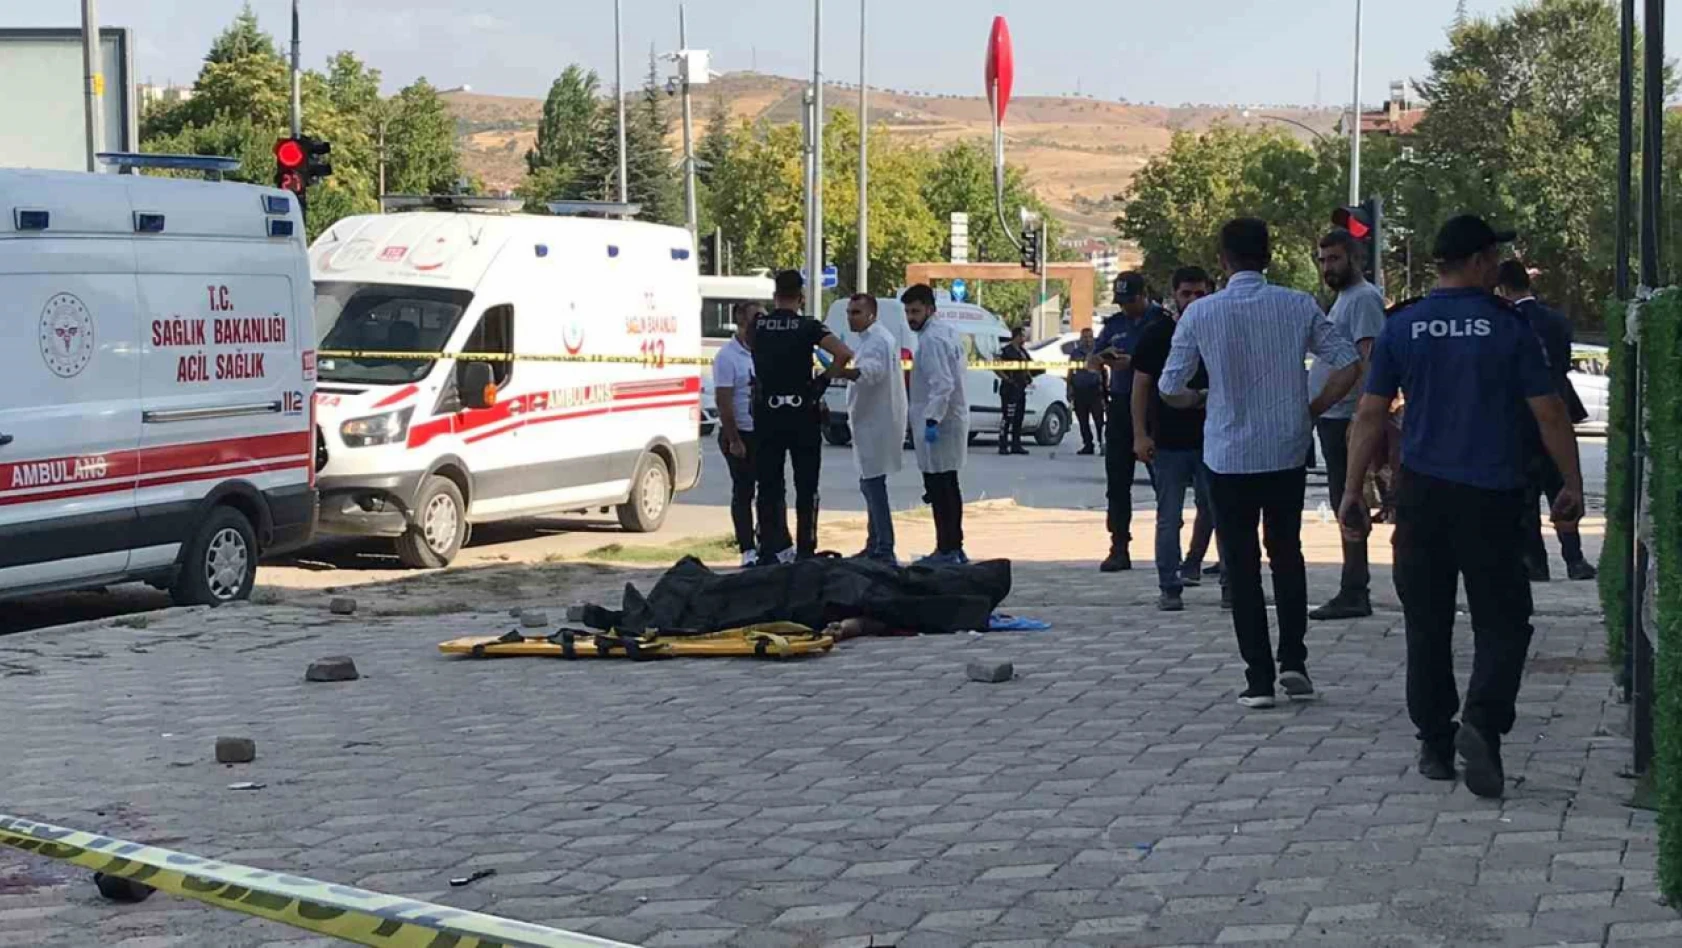 Elazığ'da silahlı çatışma: 2 ölü, 1 yaralı